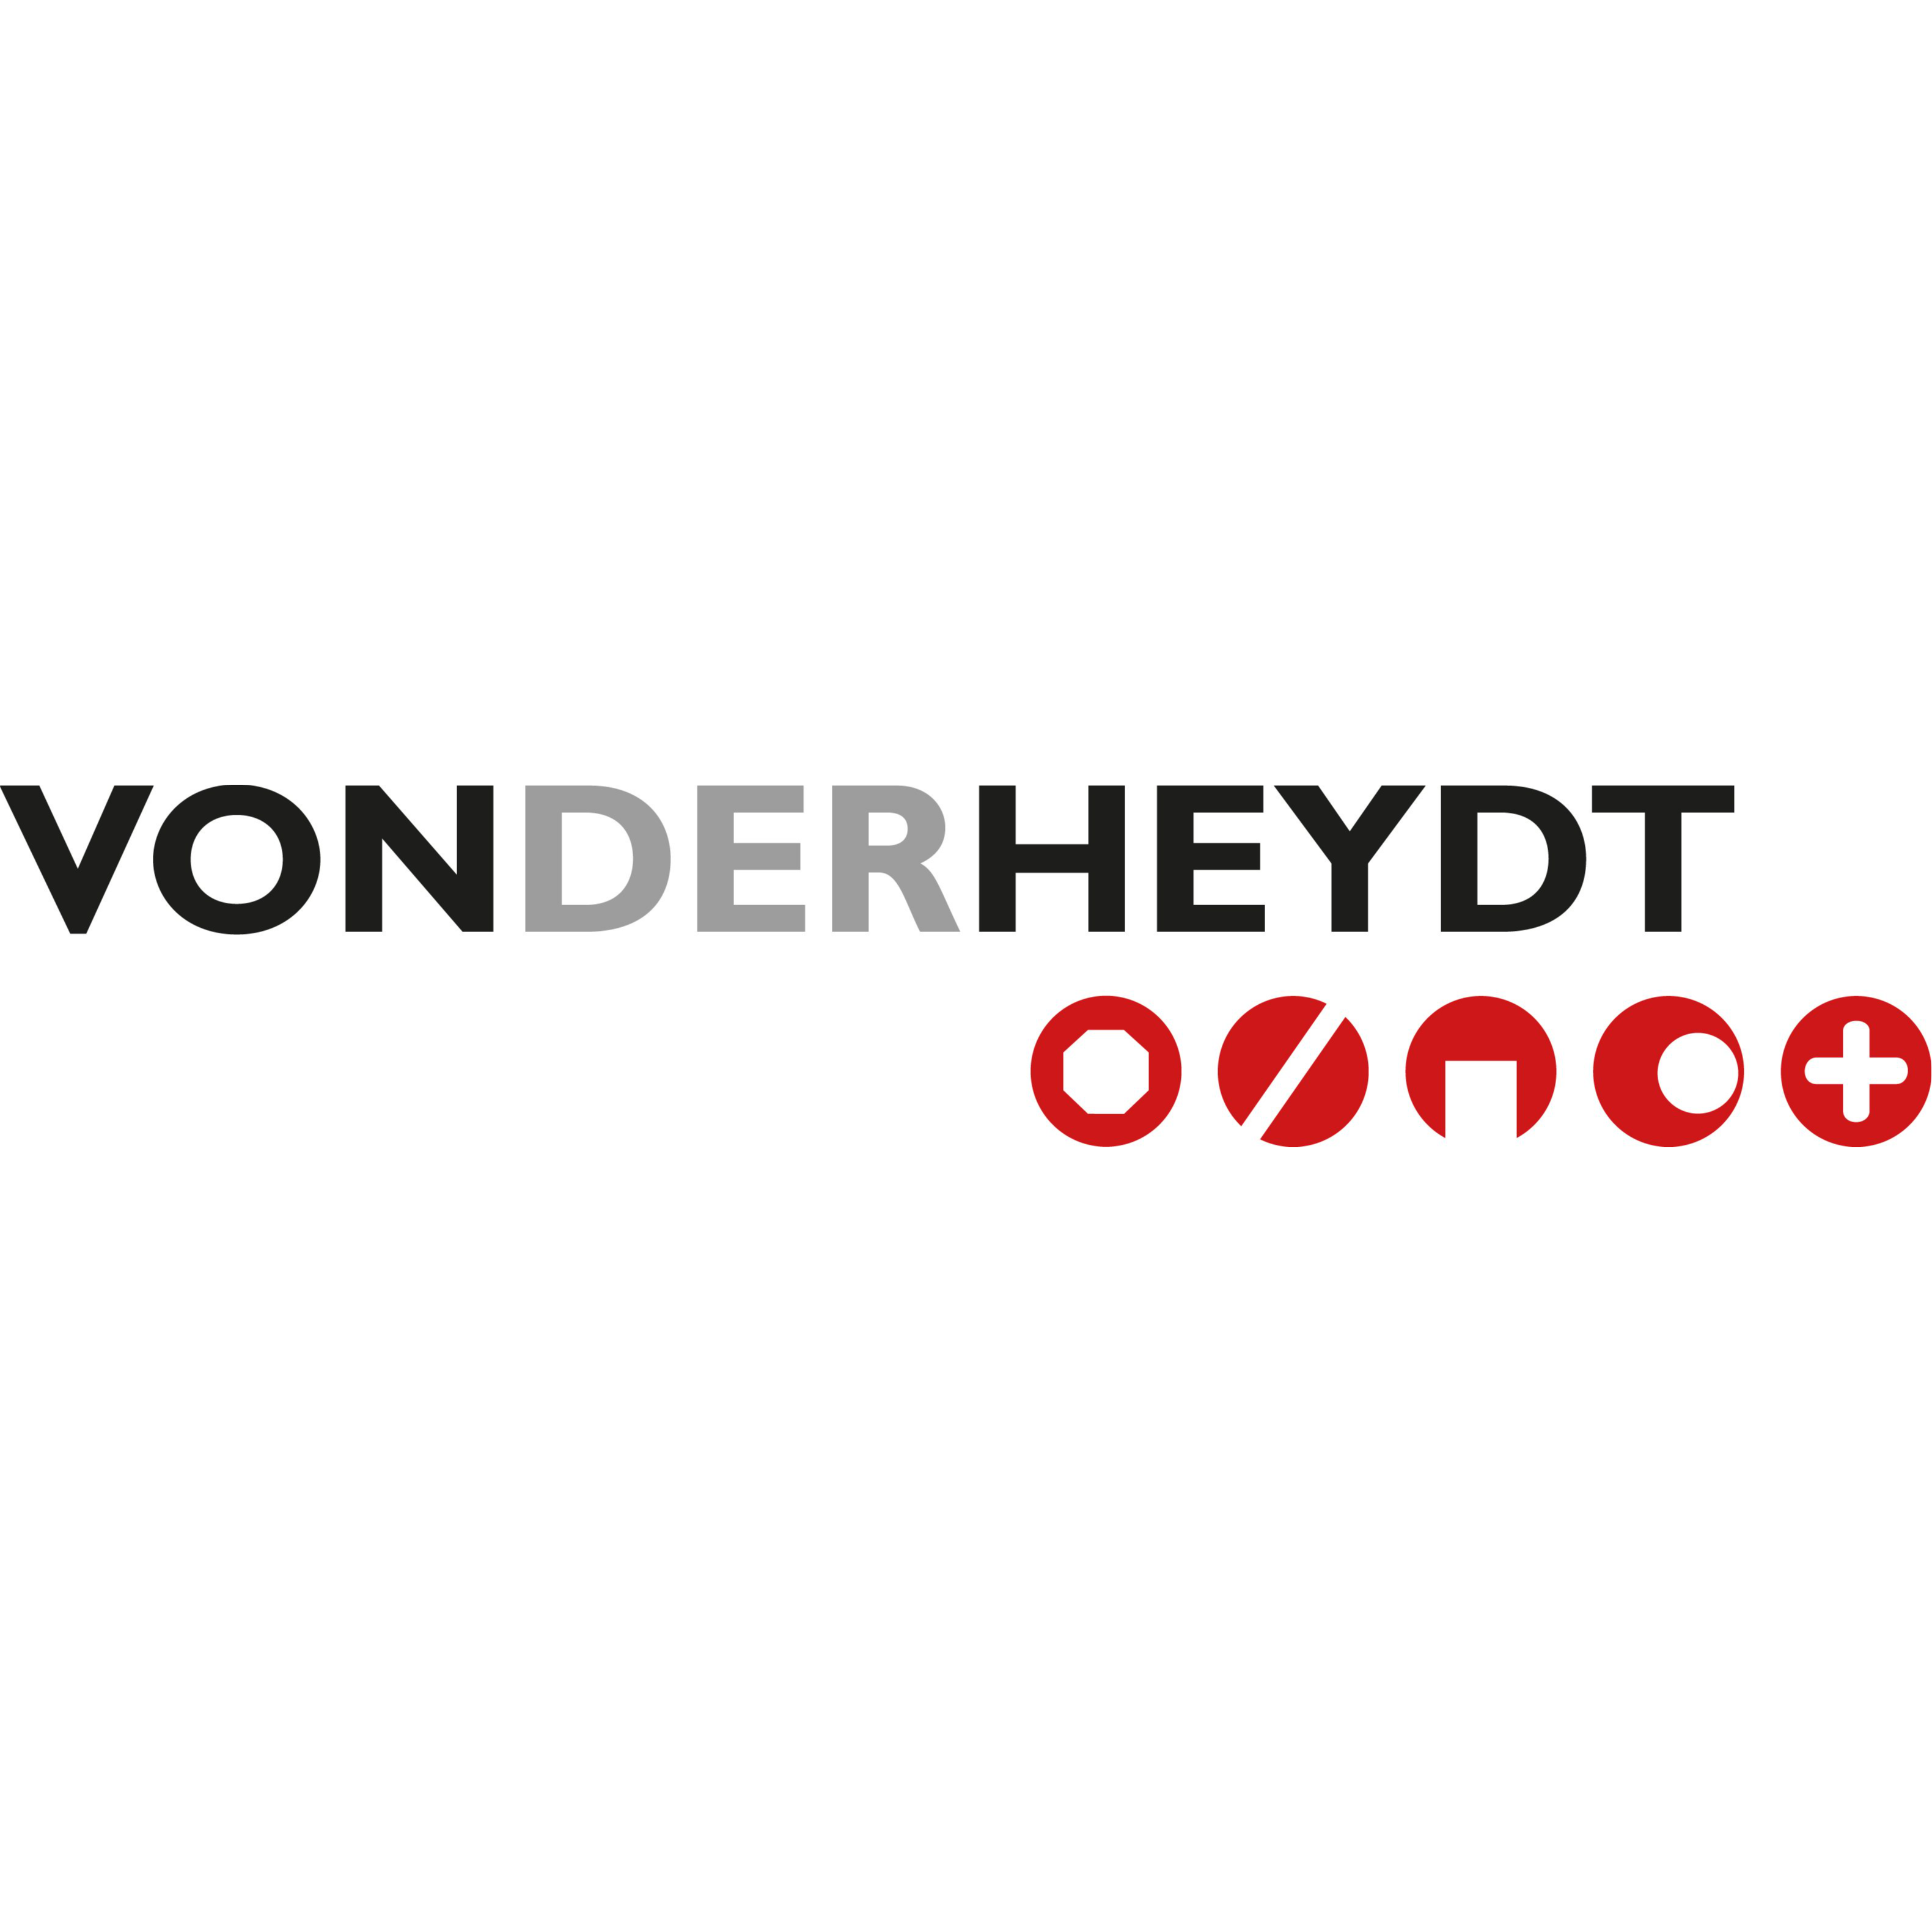 VON DER HEYDT GmbH Mainz - Öffnungszeiten VON DER HEYDT ...